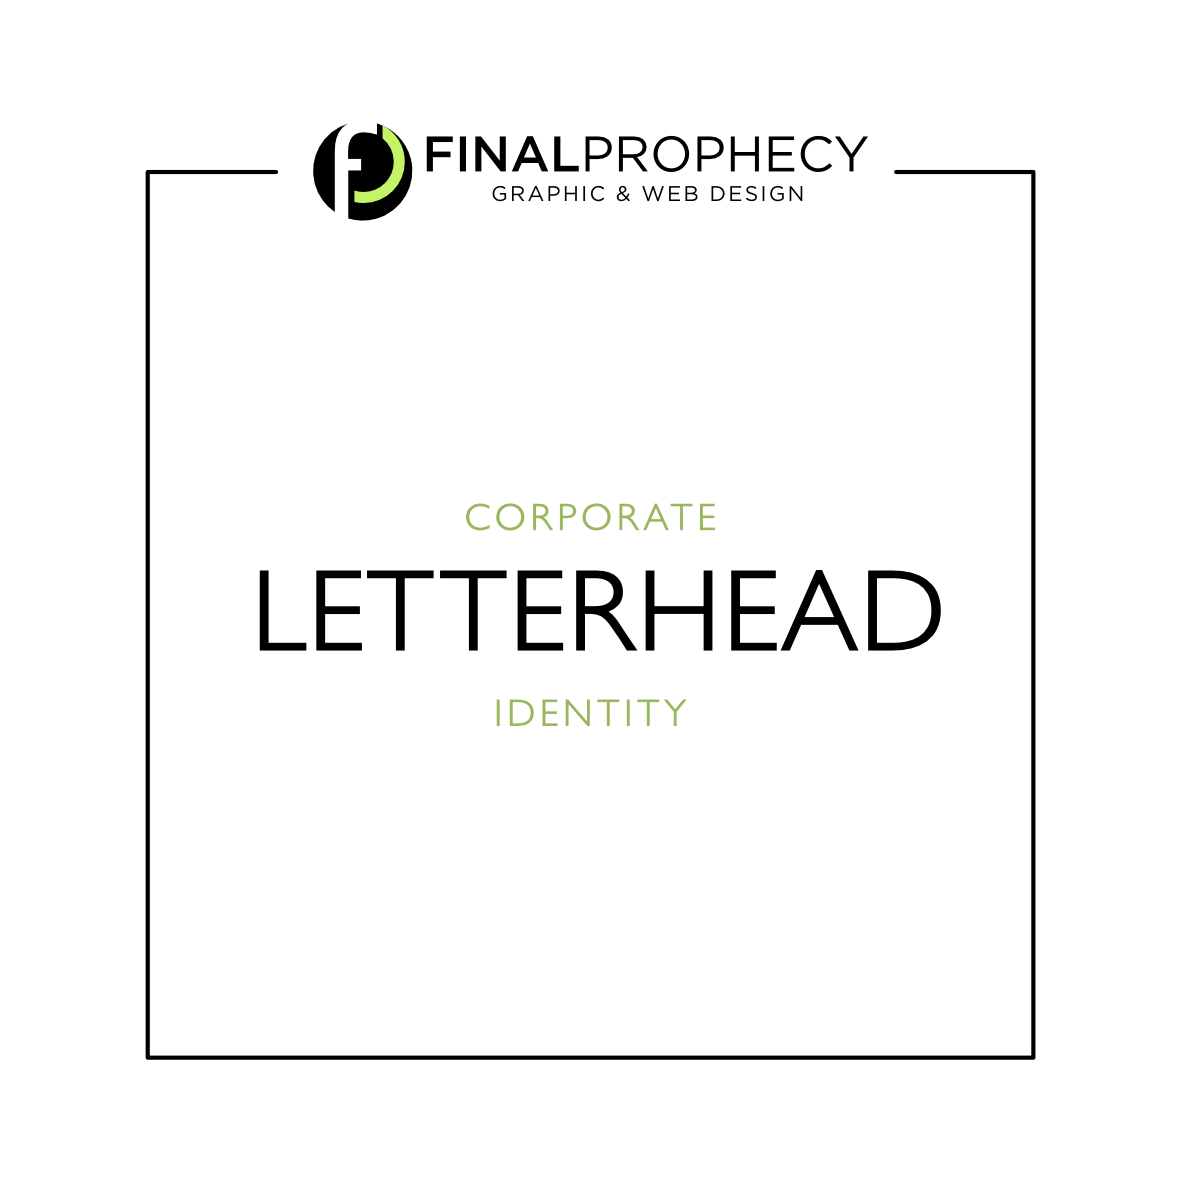 letterhead-final-prophecy-graphic-web-design